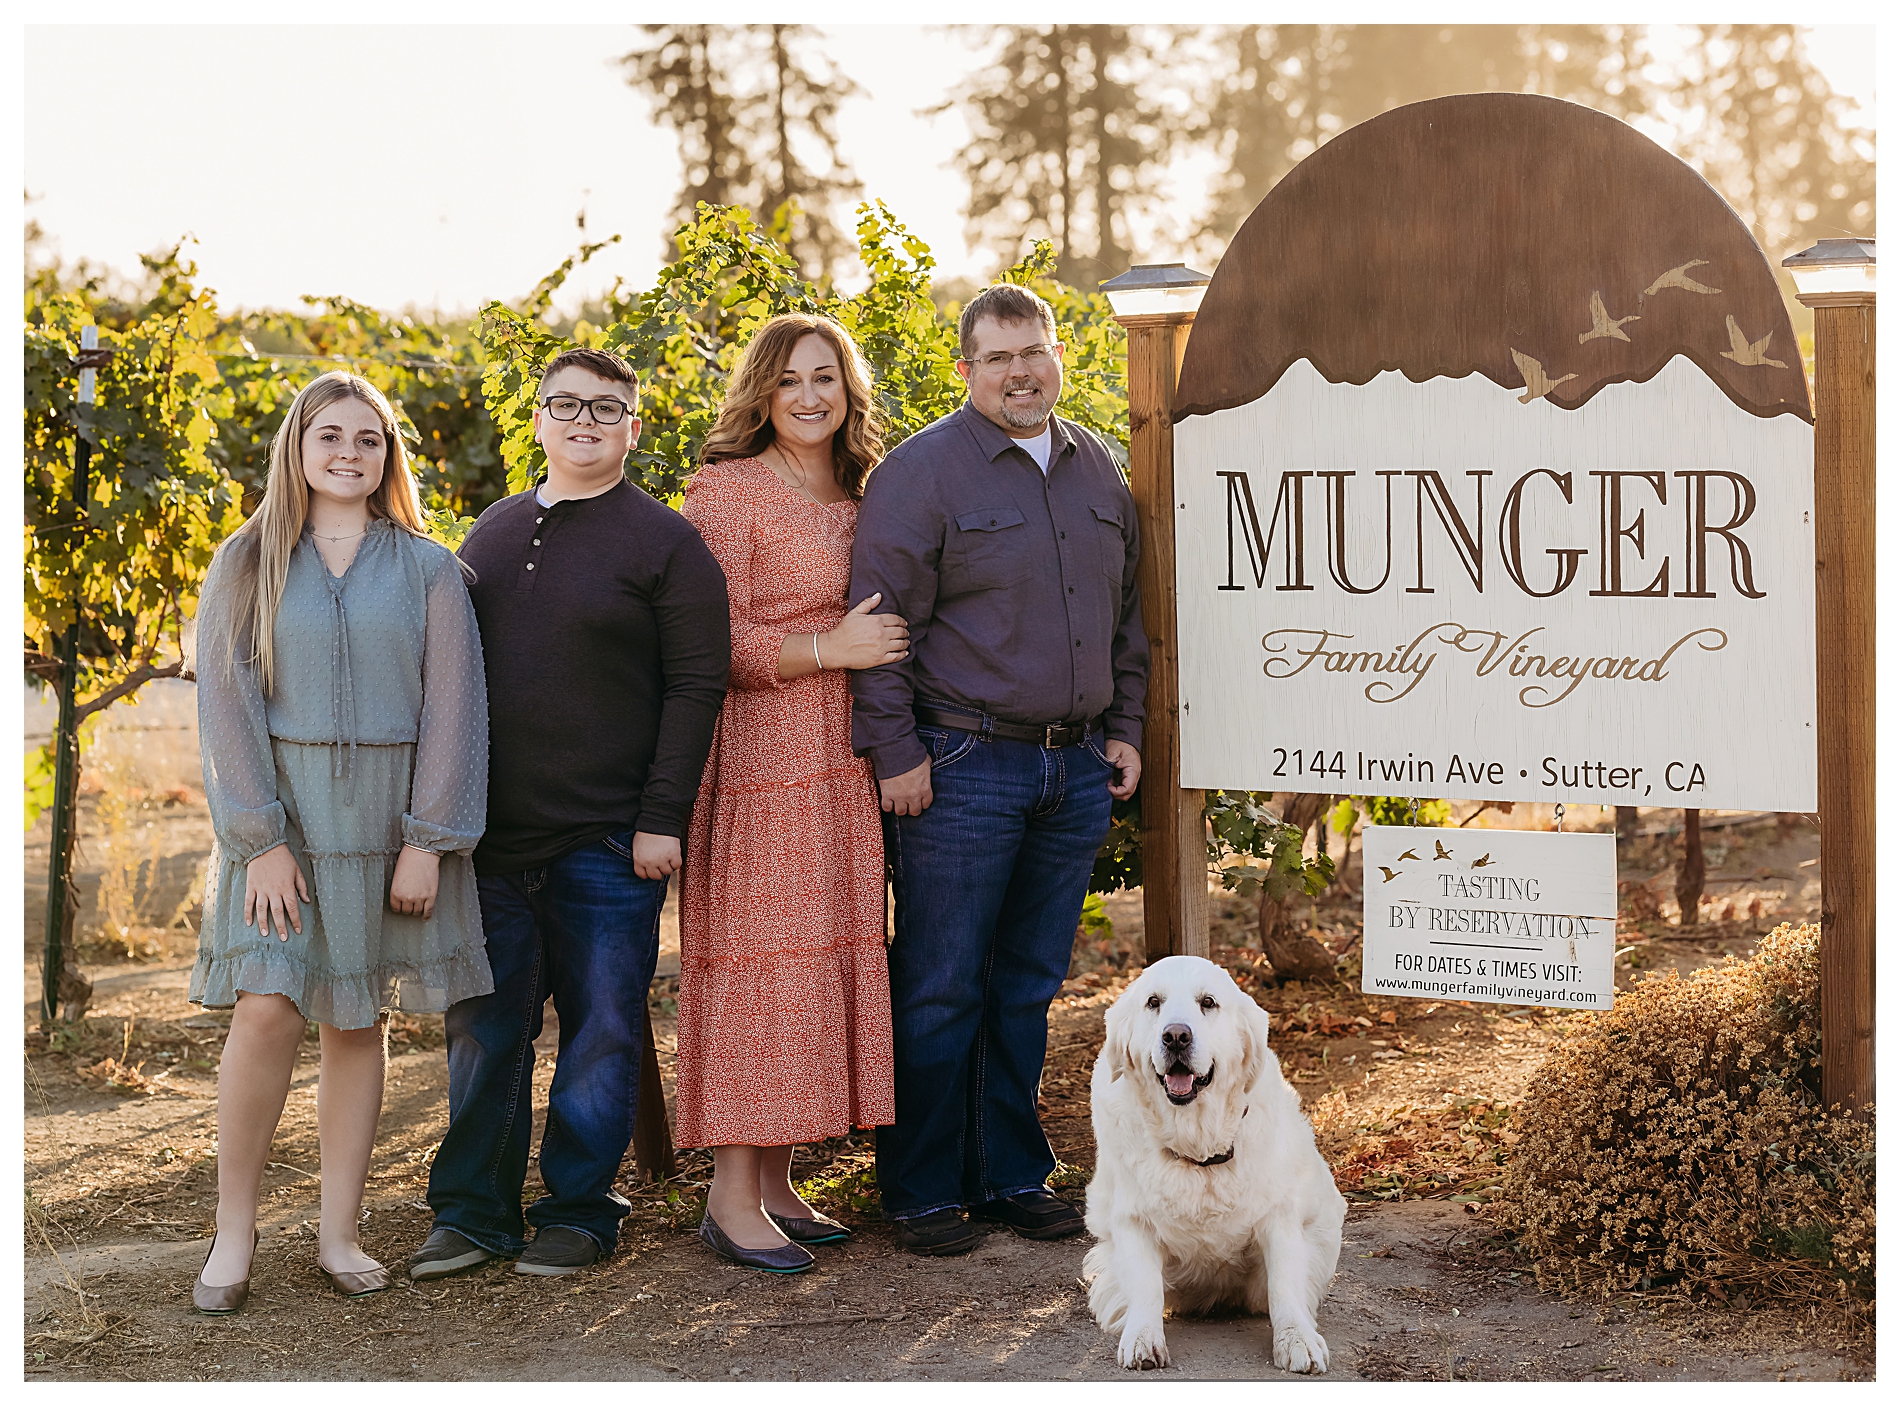 munger family vineyard